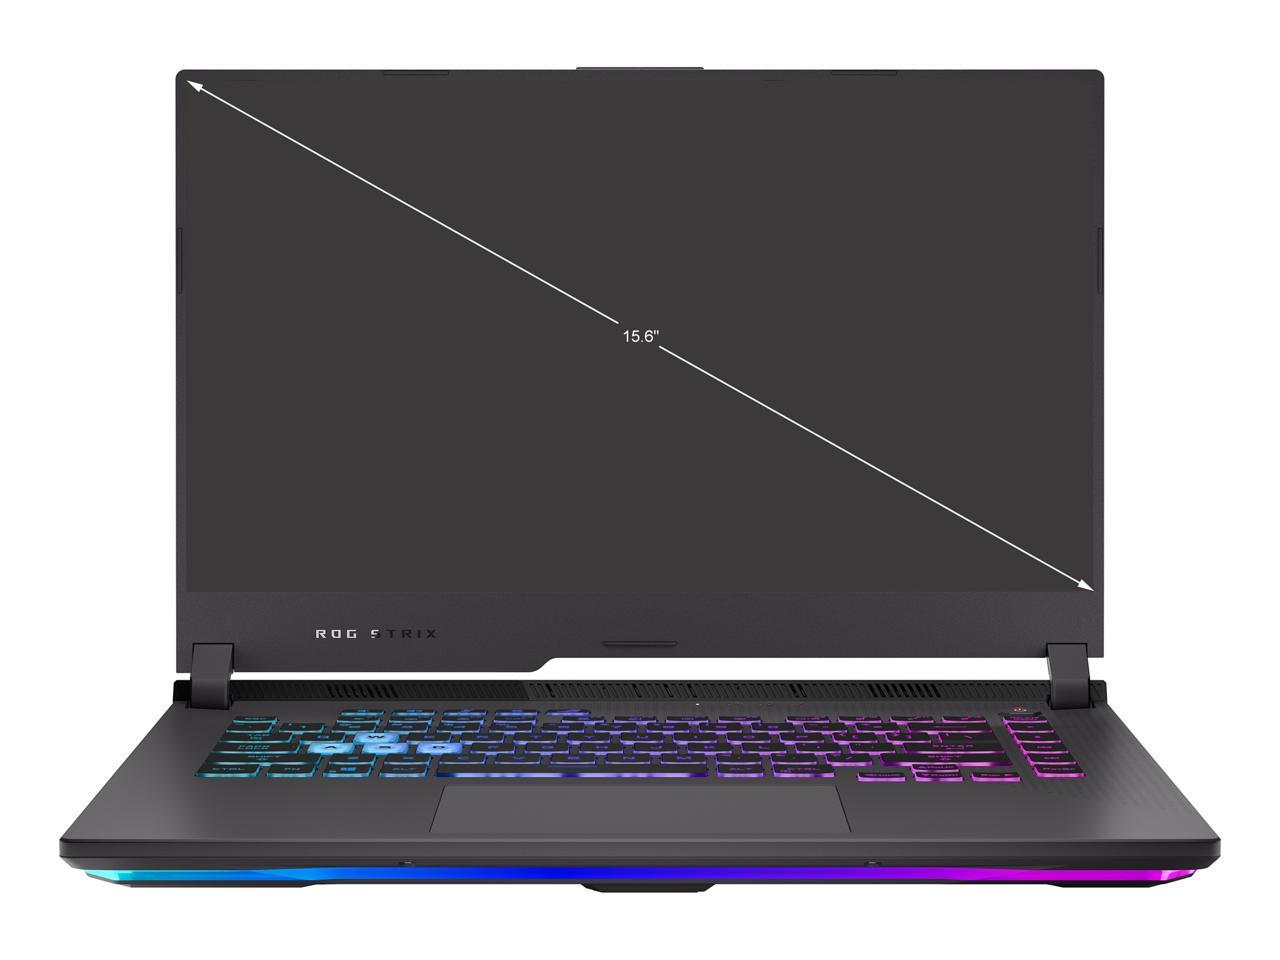 ASUS ROG Strix G15 (2021) Gaming Laptop, 15.6